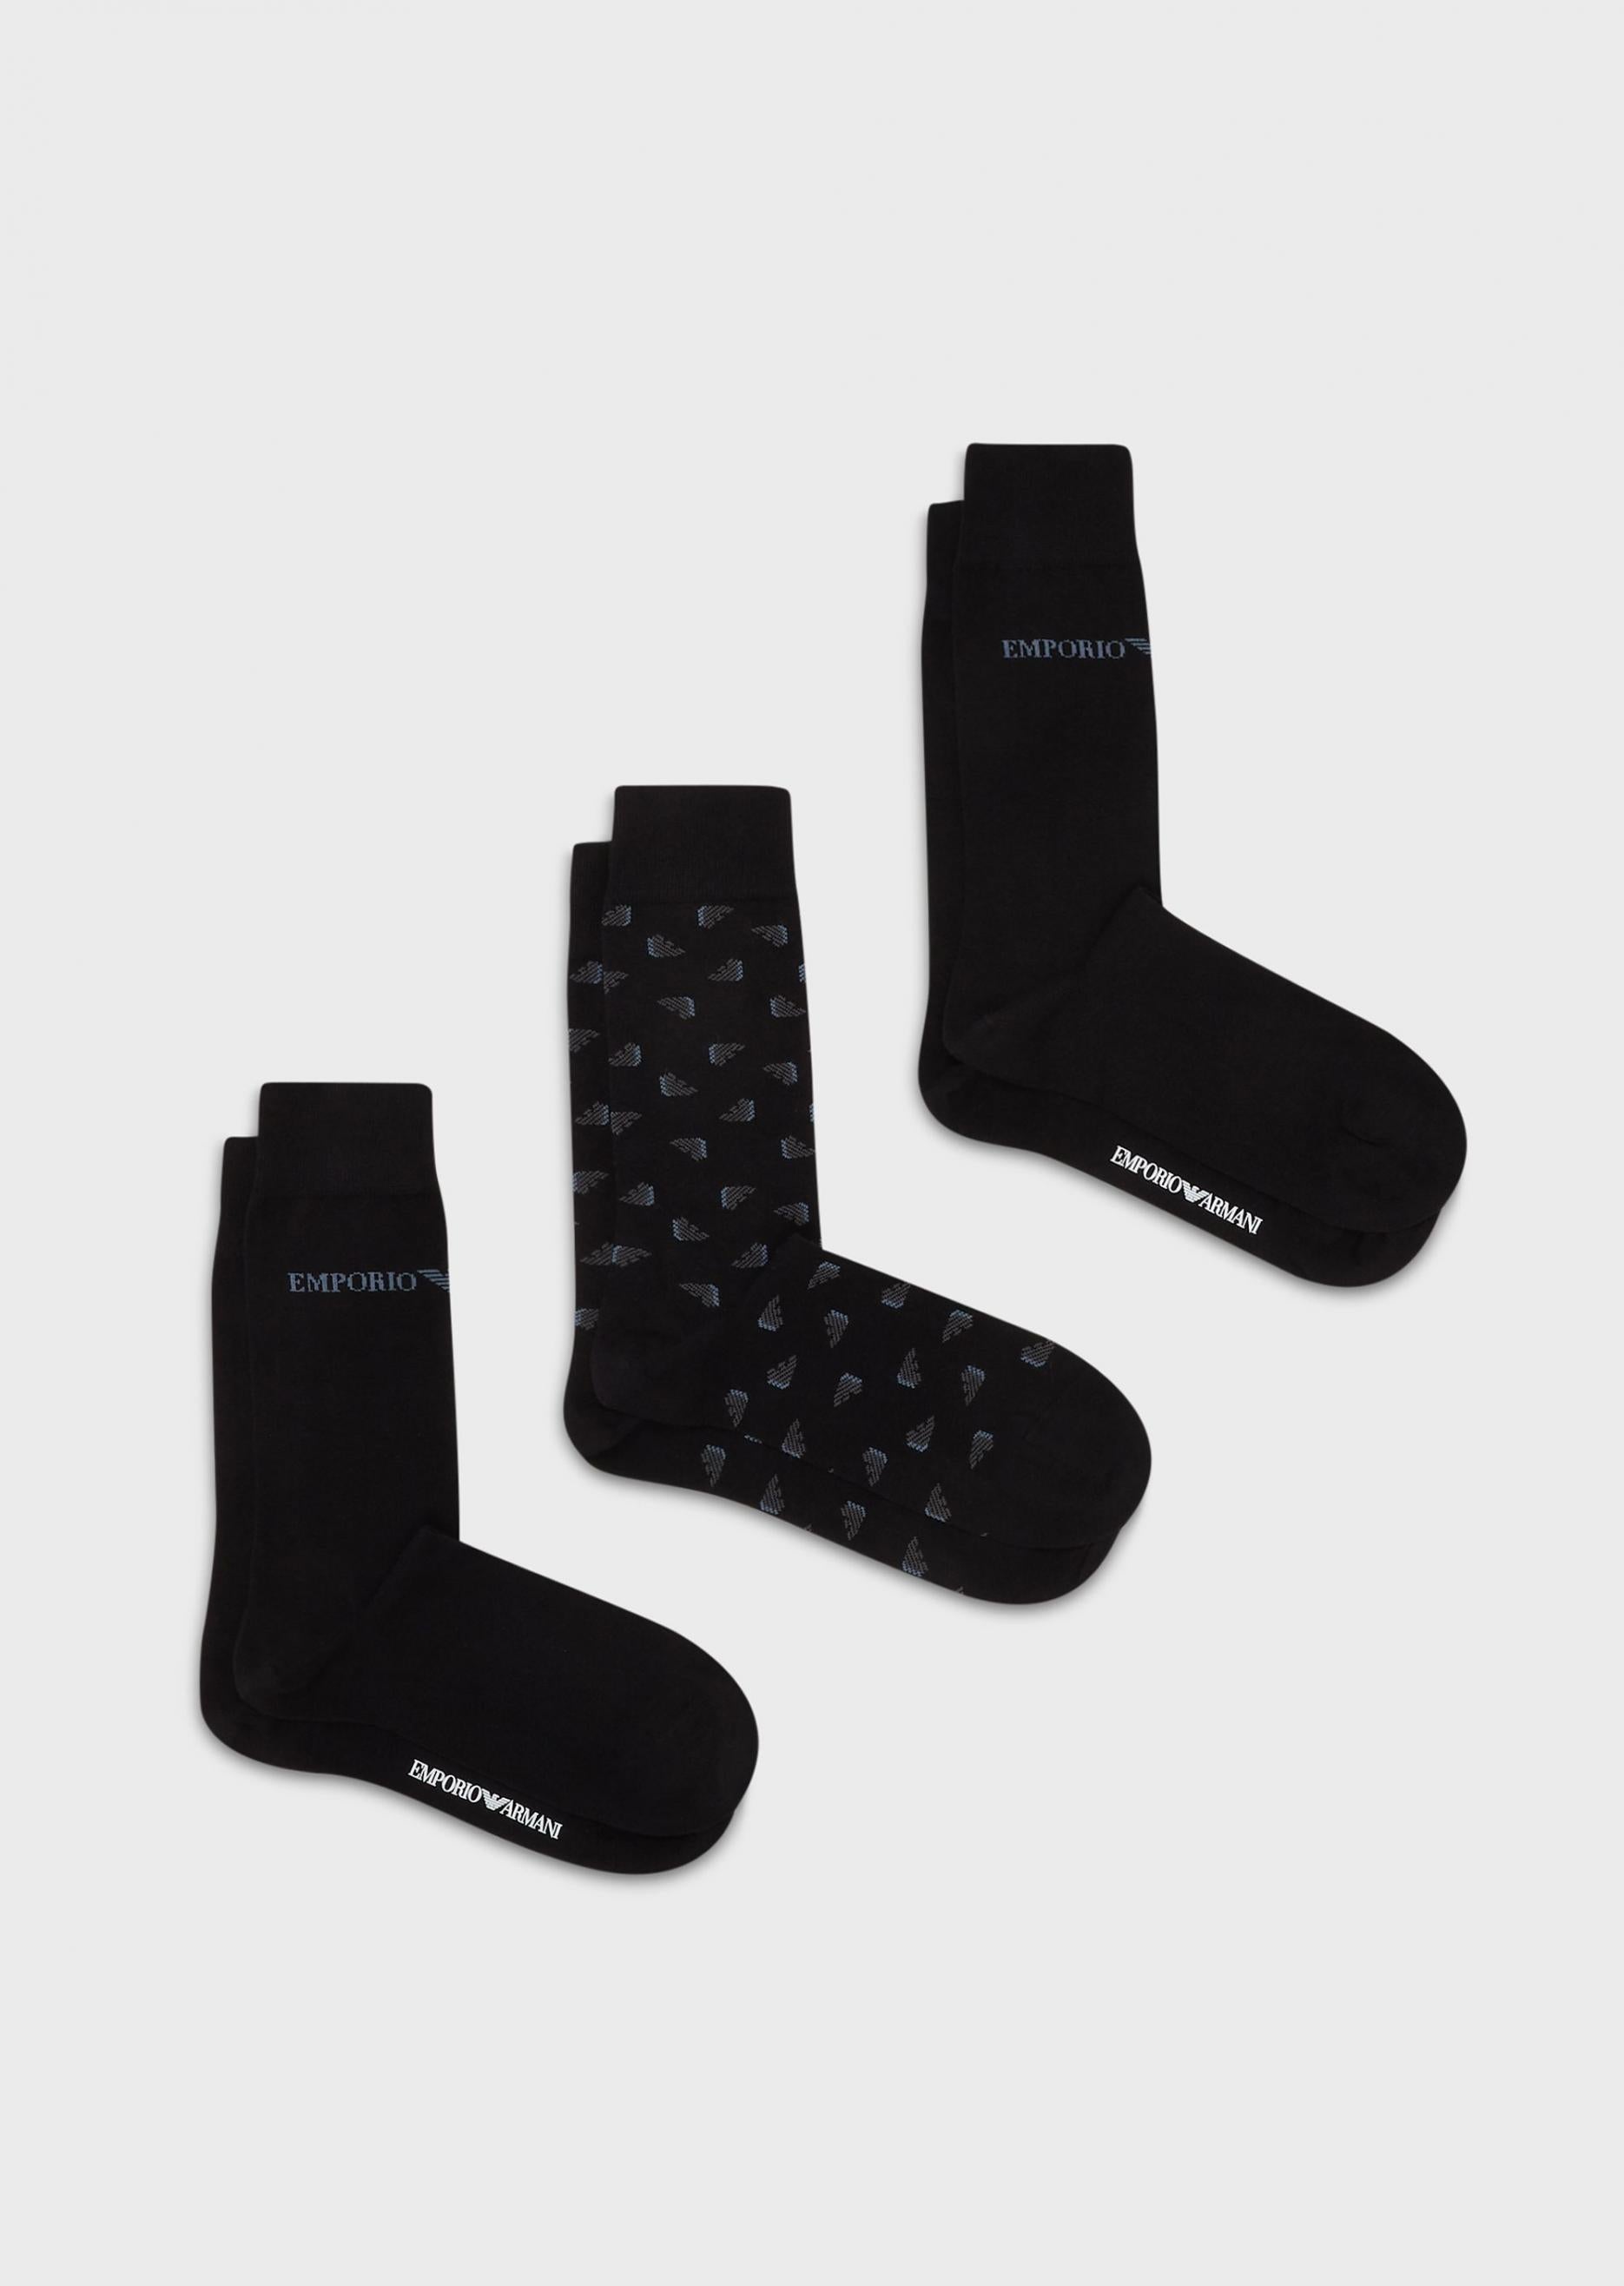 Emporio Armani 302402 3 Pack Socks - 012 Black - Escape Menswear